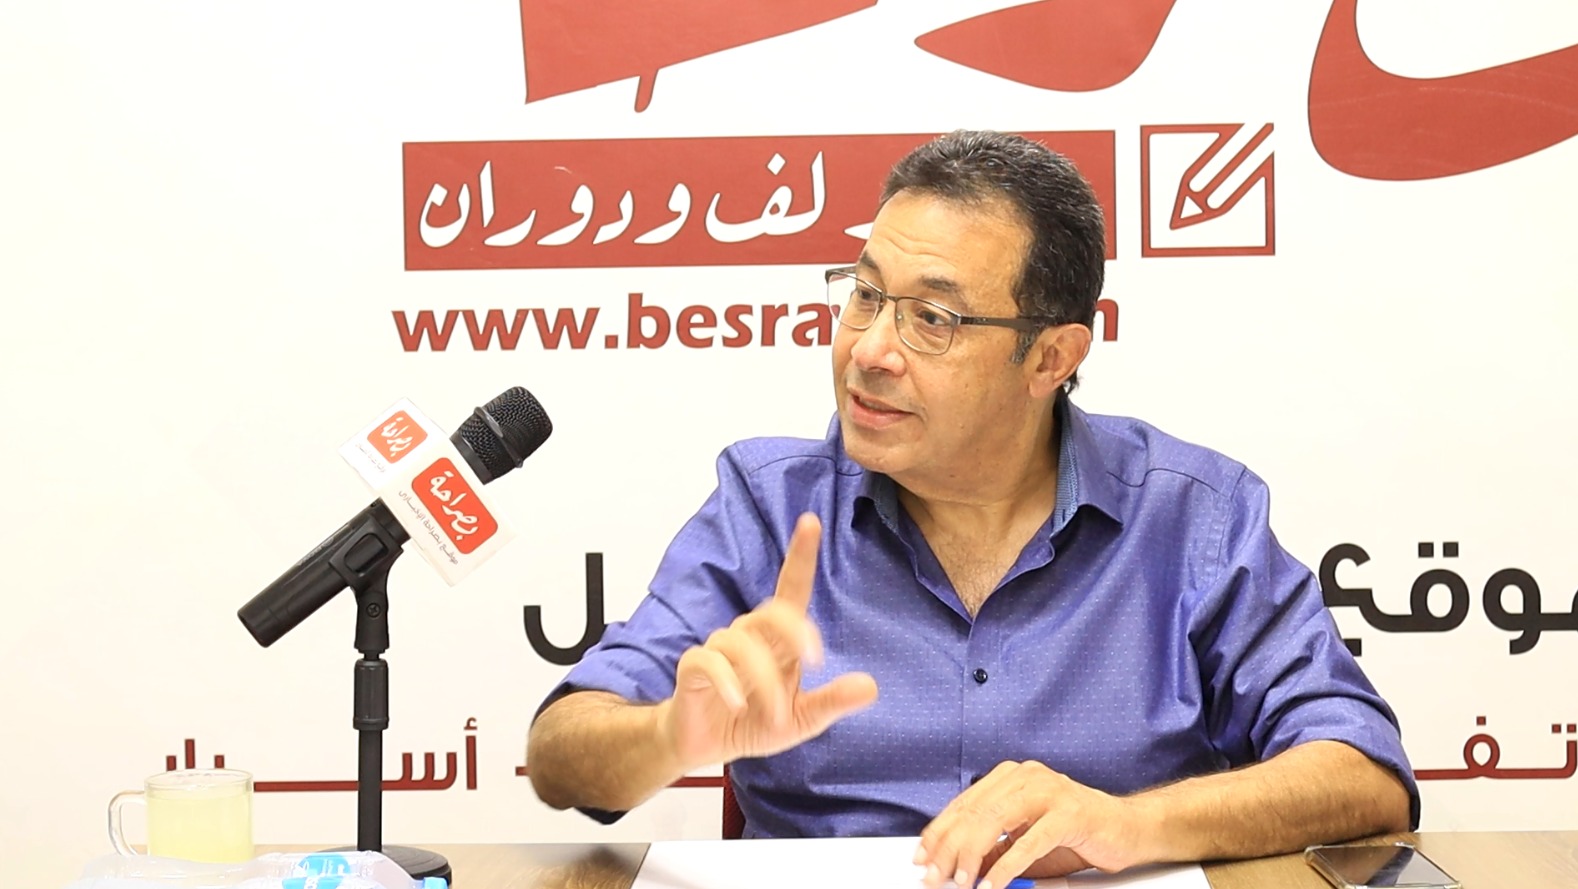  الكاتب الصحفى والإعلامى محمد هانى